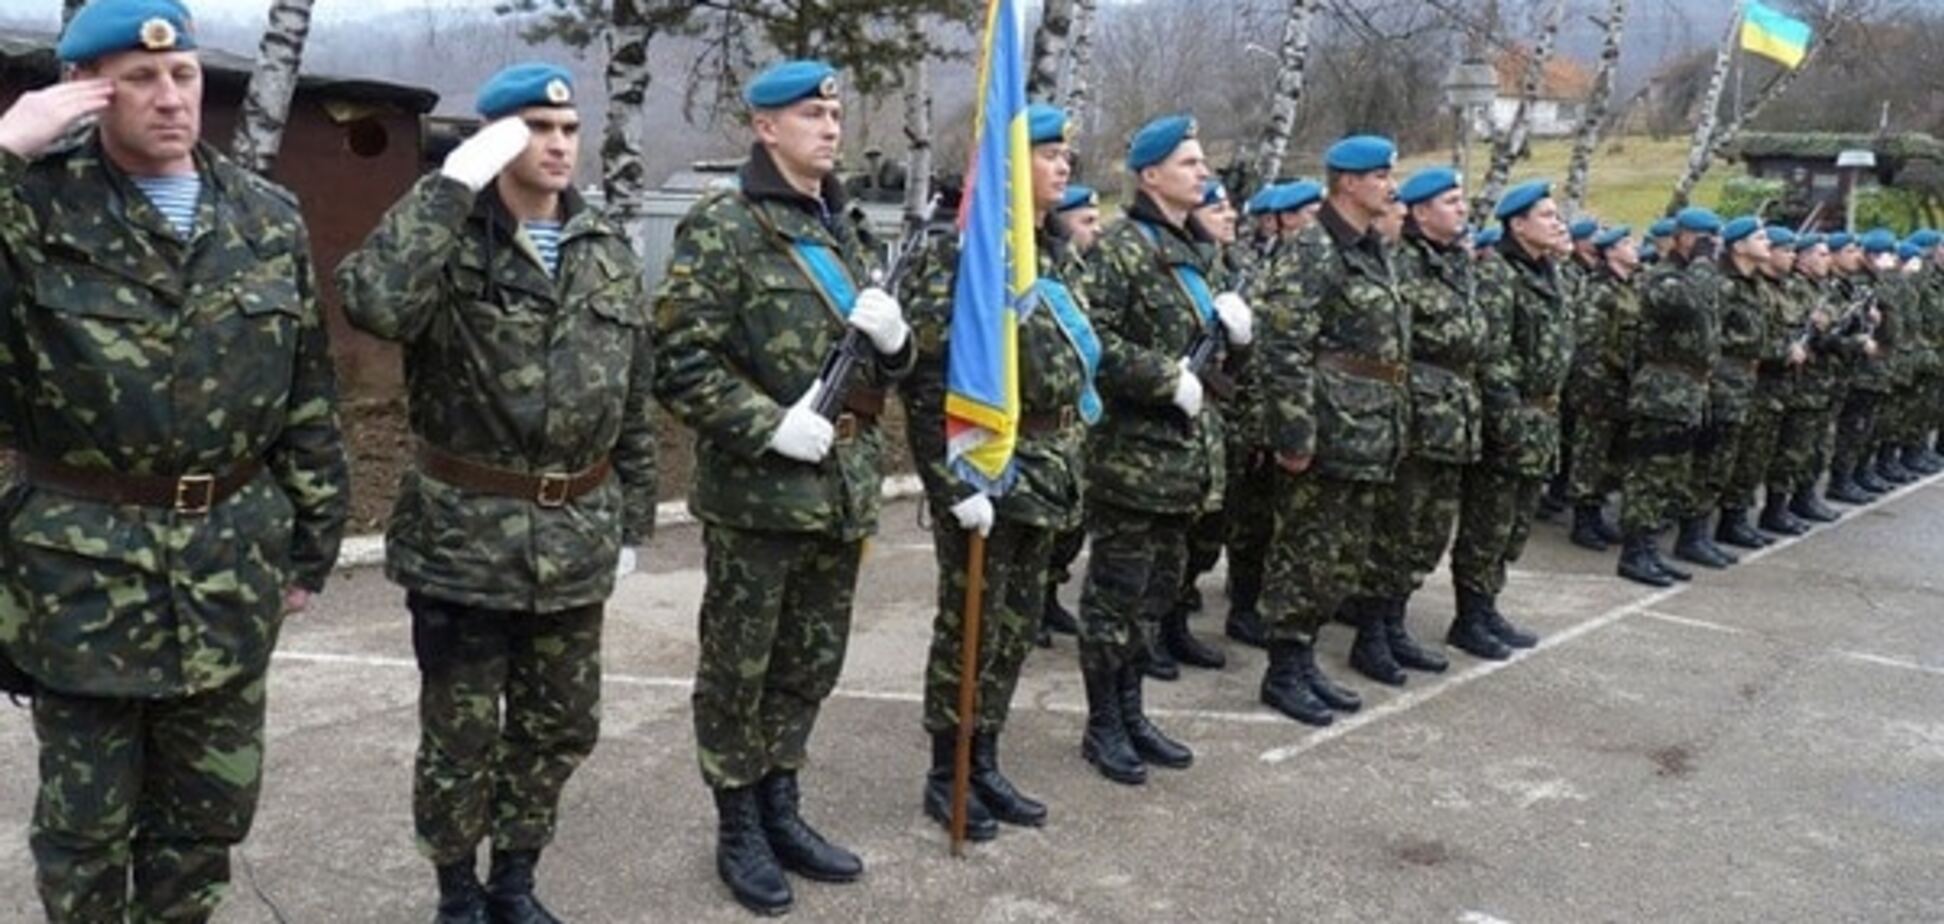 Украина не может отказаться от призывной армии  - экс-глава СБУ